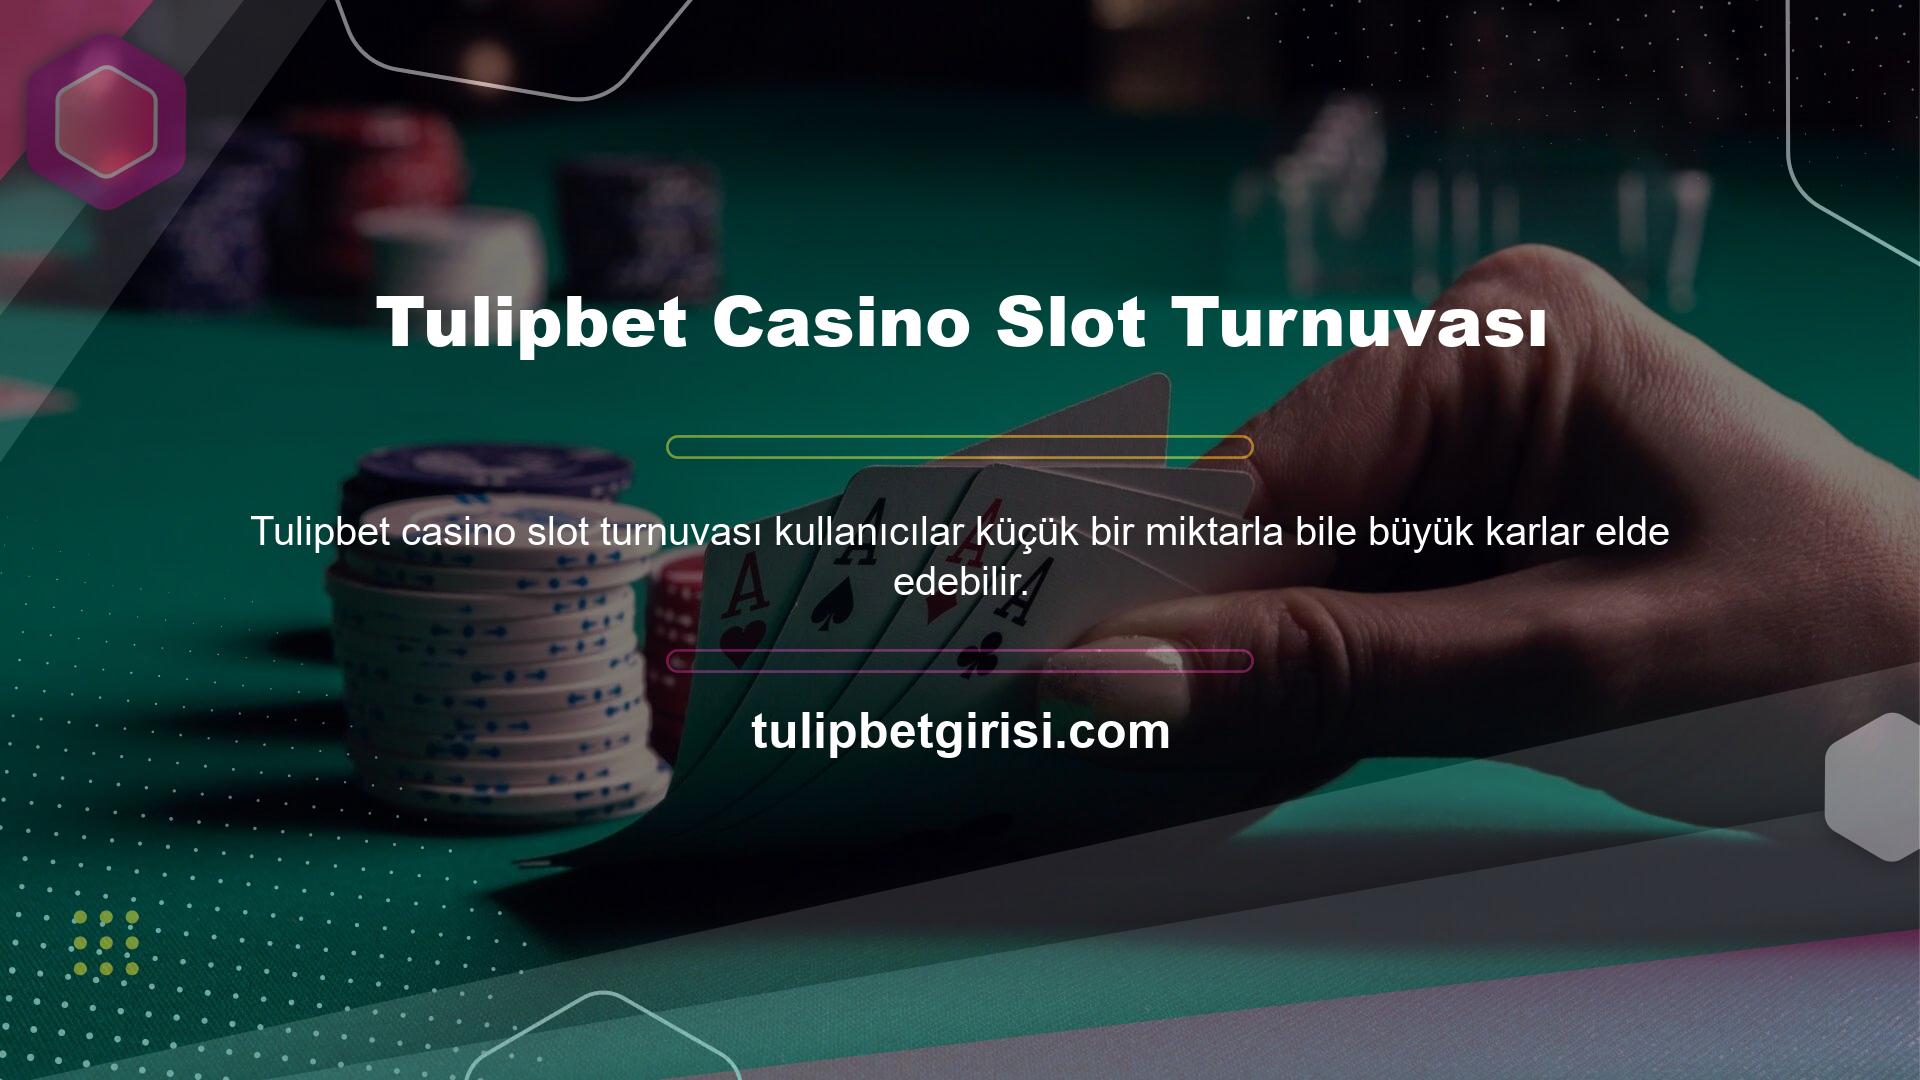 Bu cazip oranların yanı sıra Tulipbet Casino slot turnuvaları da kullanıcıların büyük kazanmalarına olanak sağlıyor